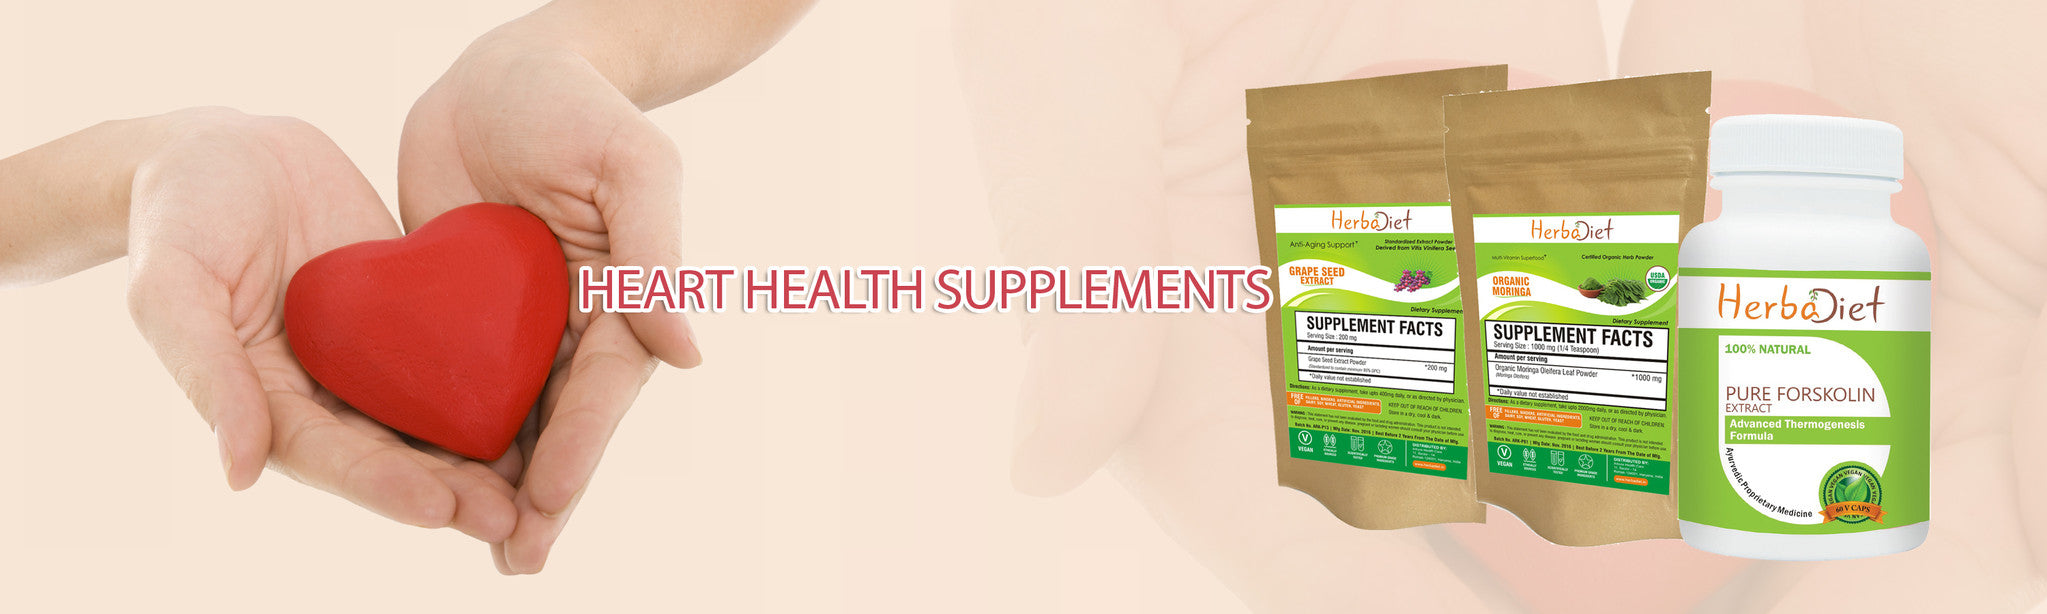 Herbal supplements online